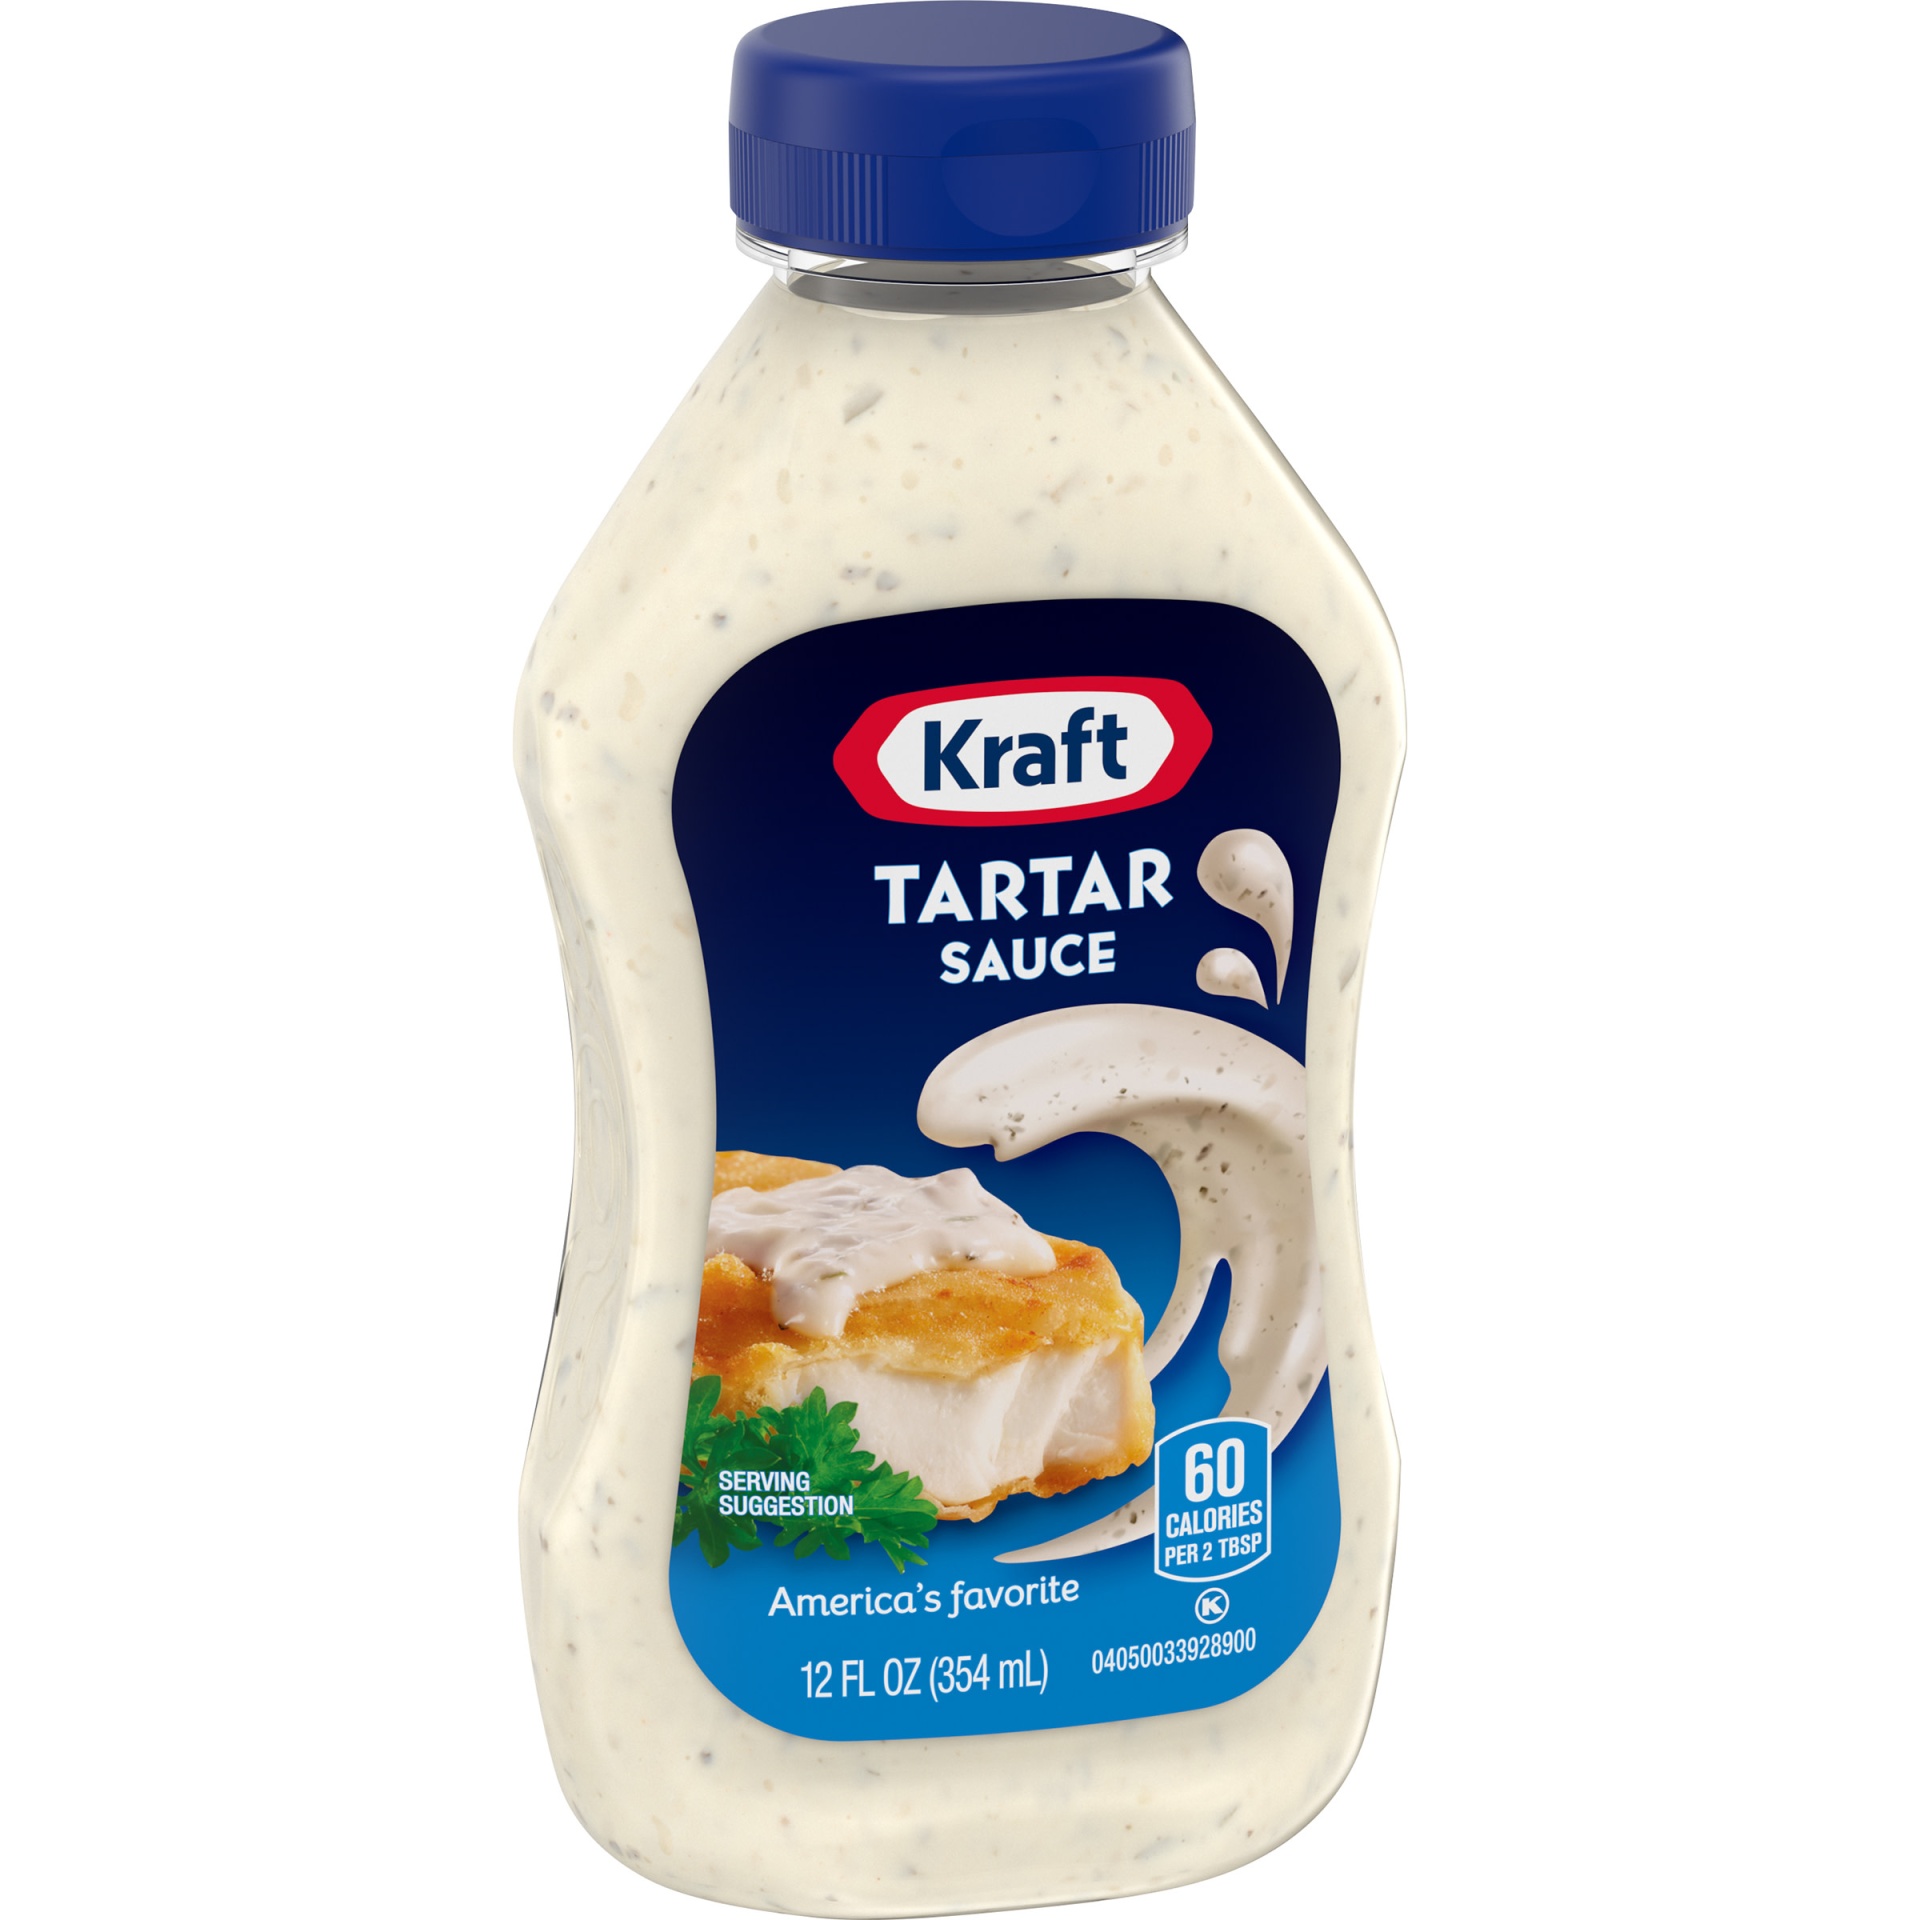 slide 4 of 7, Kraft Tartar Sauce Bottle, 12 fl oz